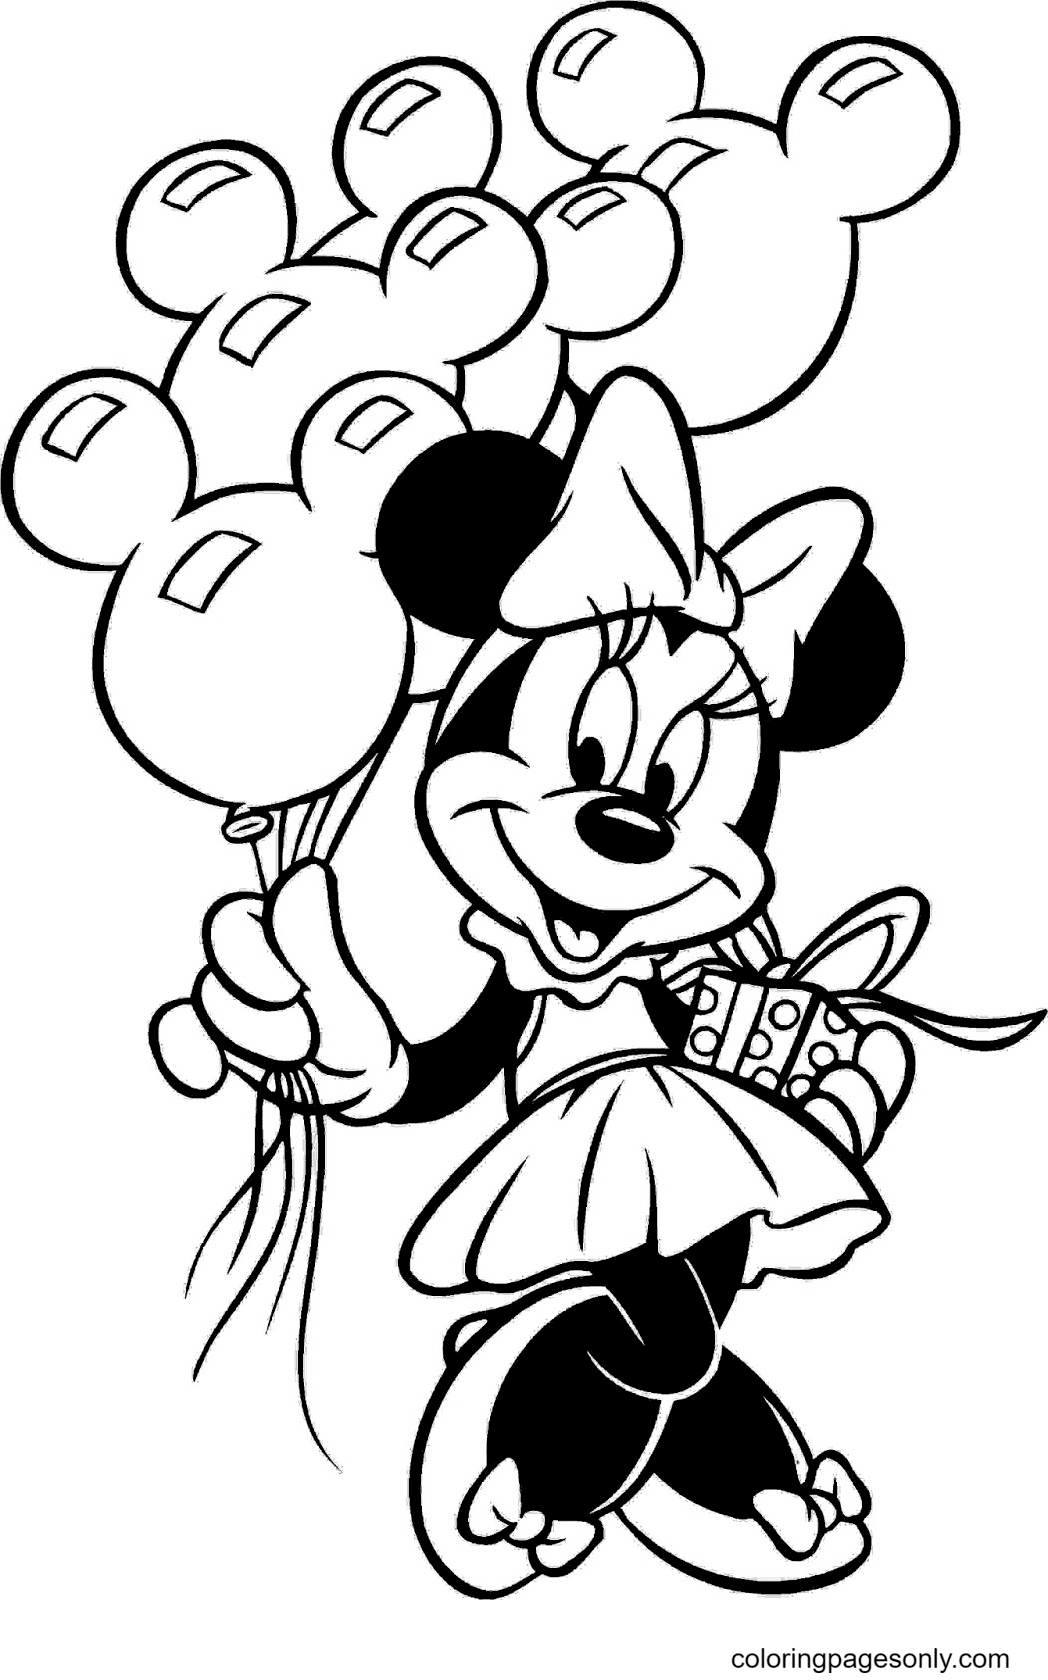 Minnie sosteniendo globos y cajas de regalo de Minnie Mouse